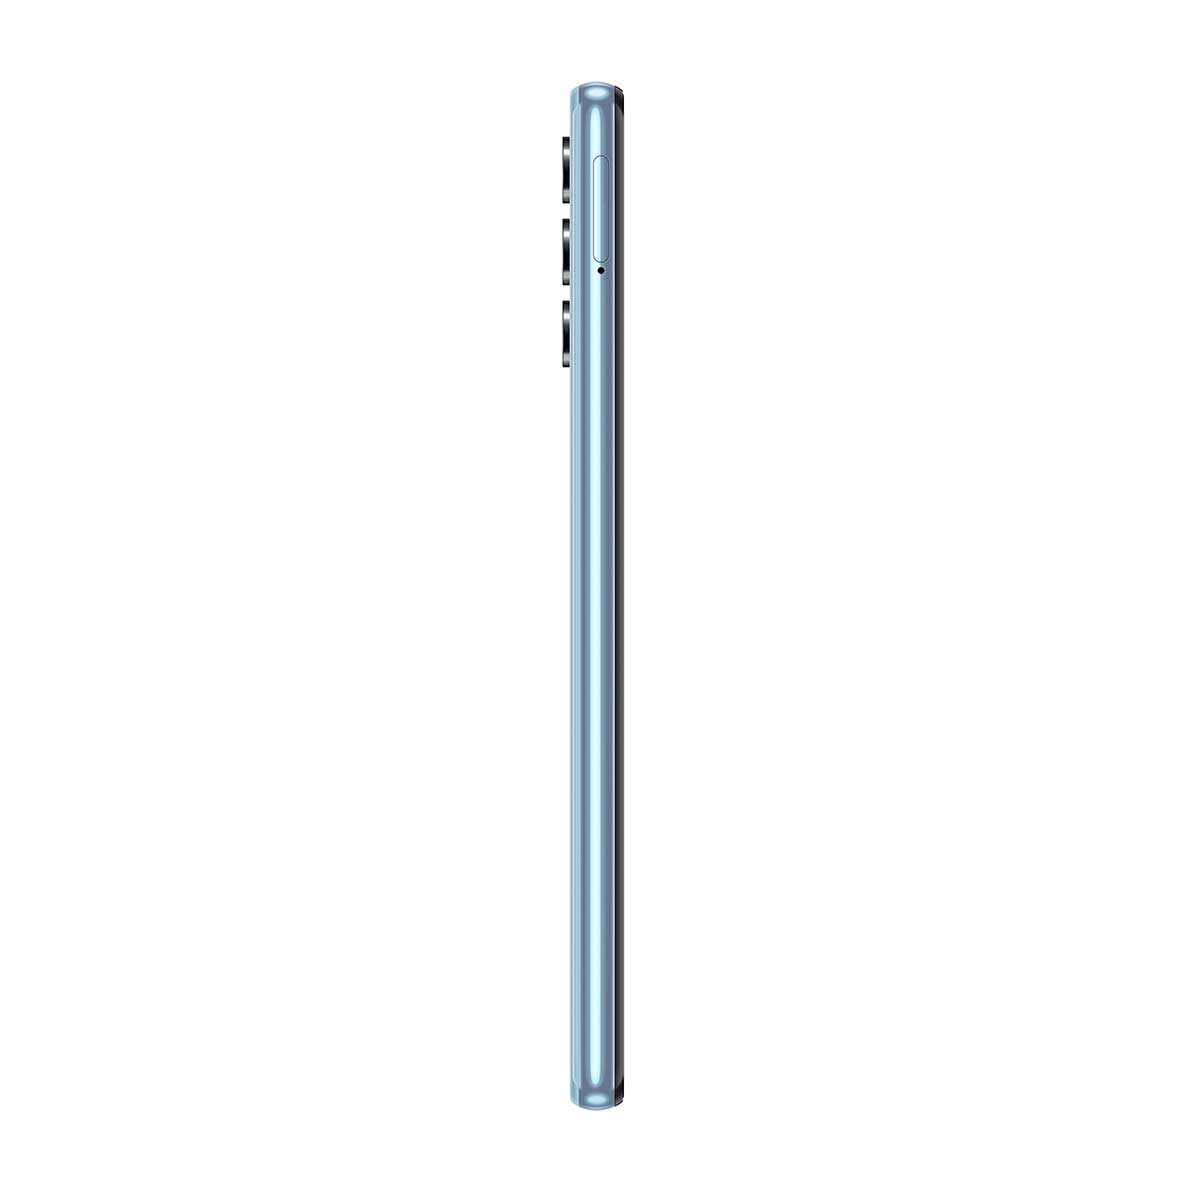 Smartphone Samsung A32 128GB Azul 4G Tela 6.4” Câmera Quádrupla 64MP Perfil Esquerdo